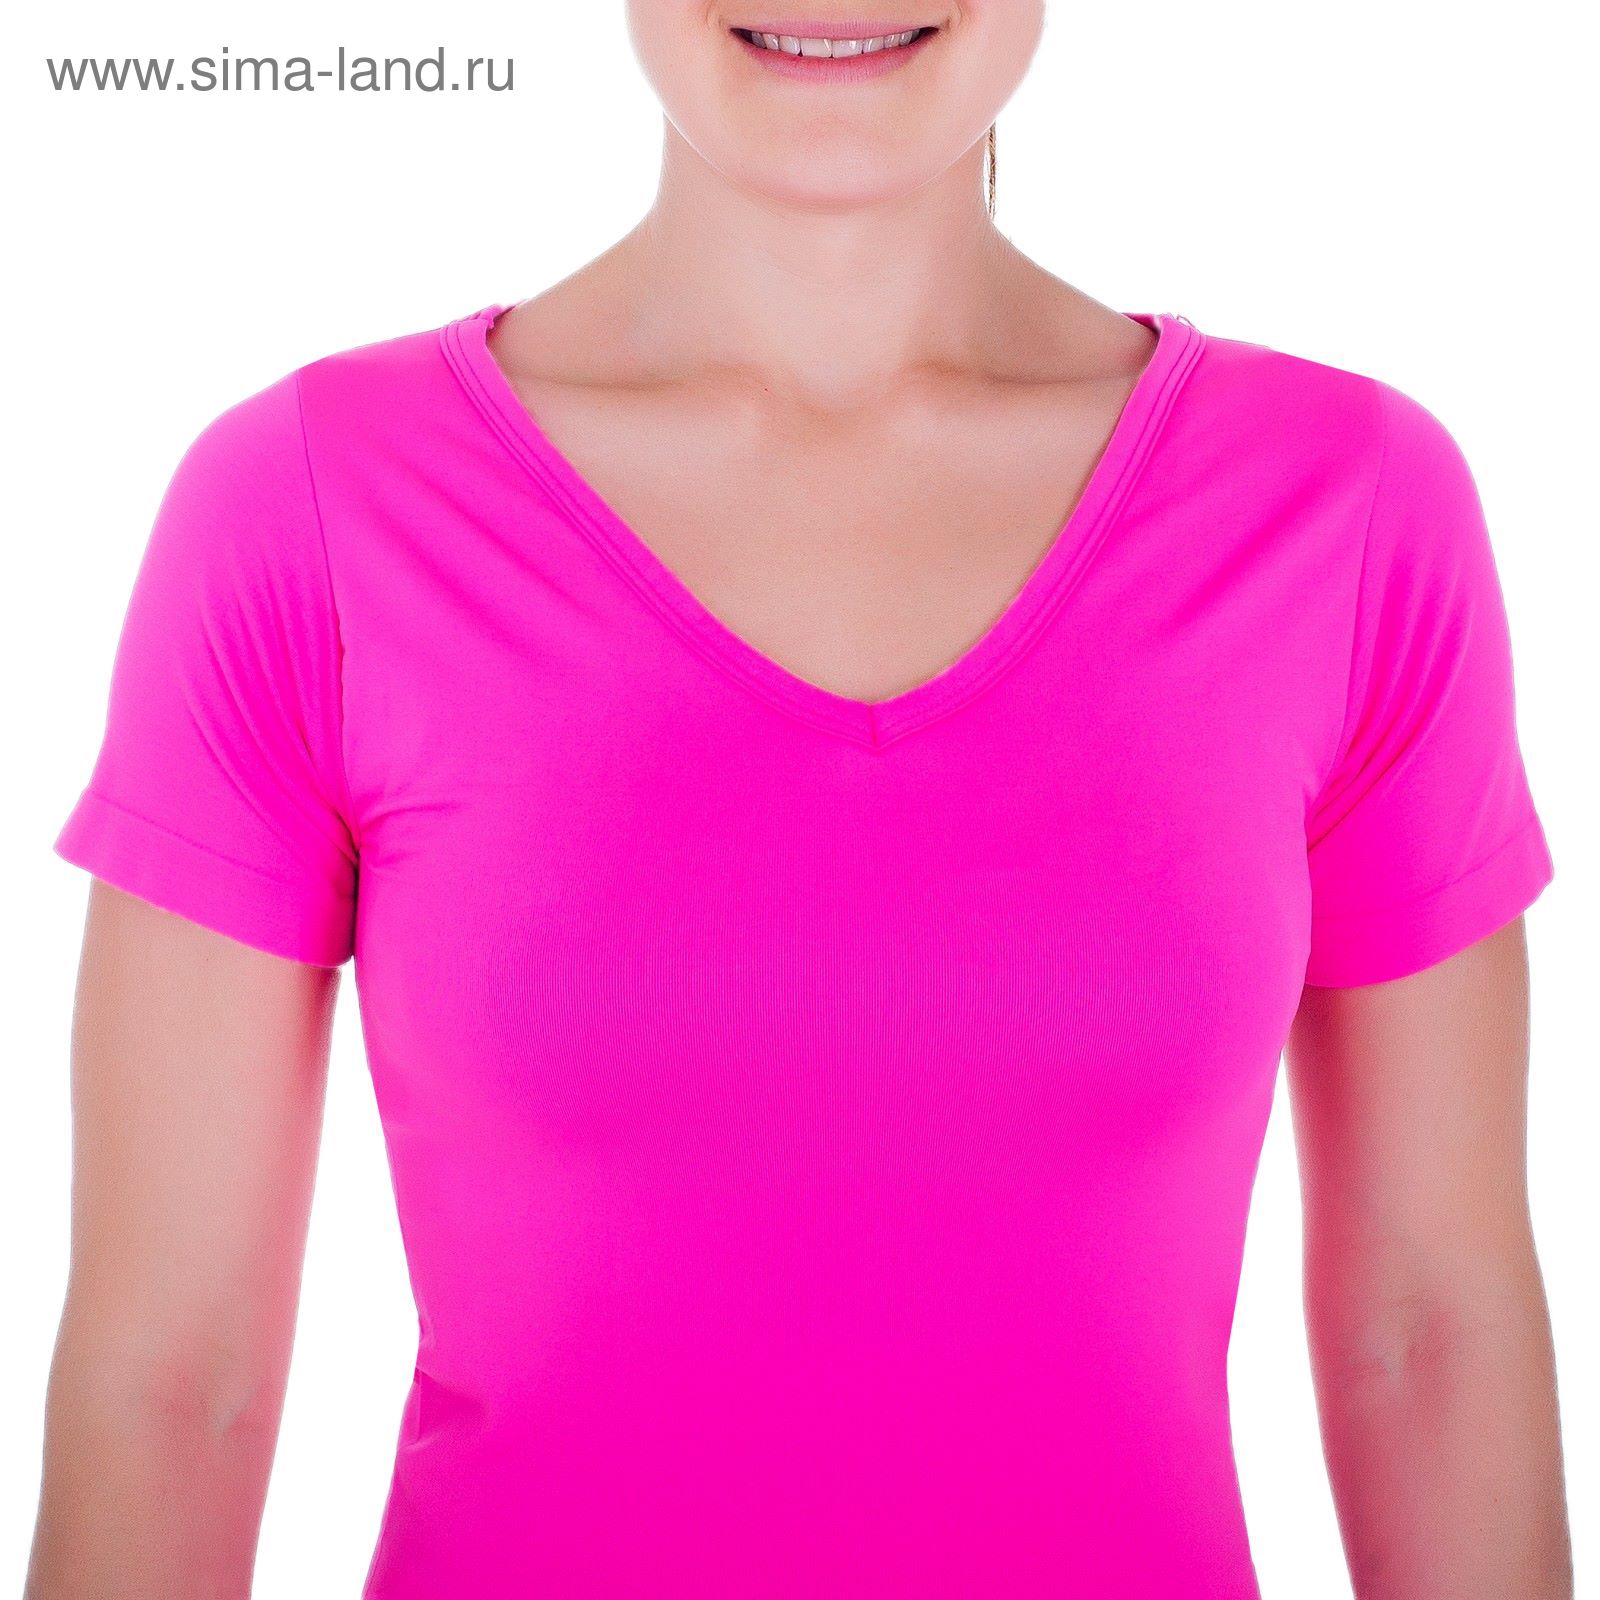 Спортивная футболка ONLITOP Balance rose, размер S-M (42-44)